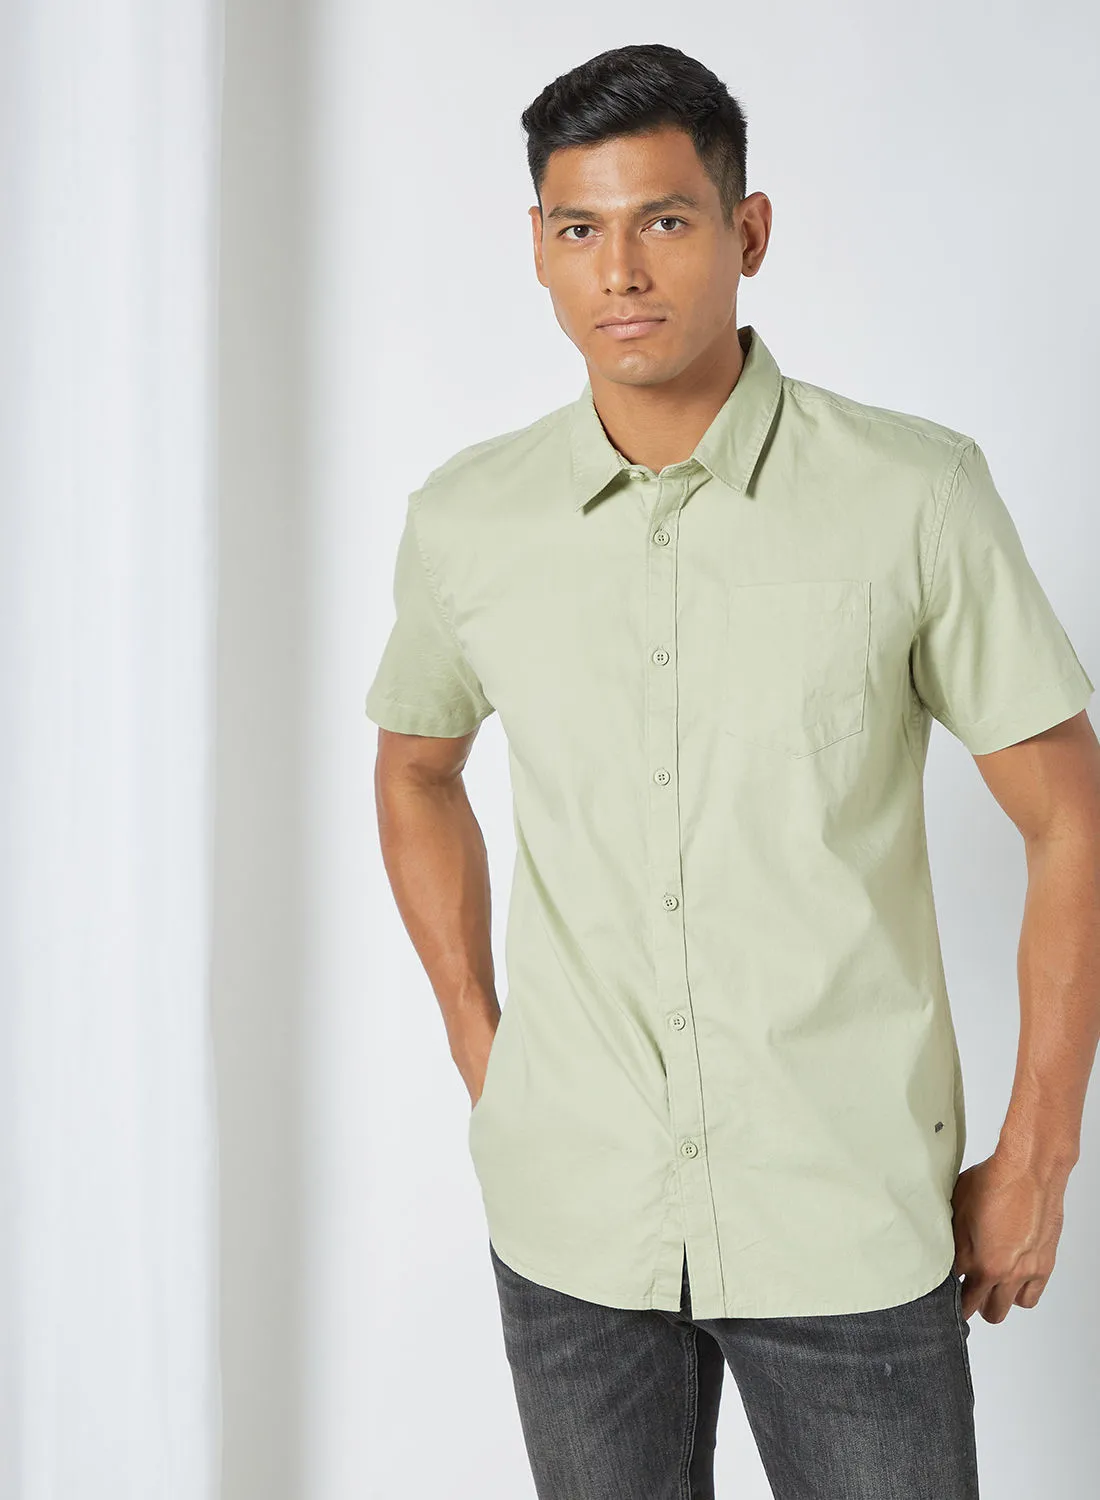 ABOF Men's Basic Short Sleeve Shirt Green